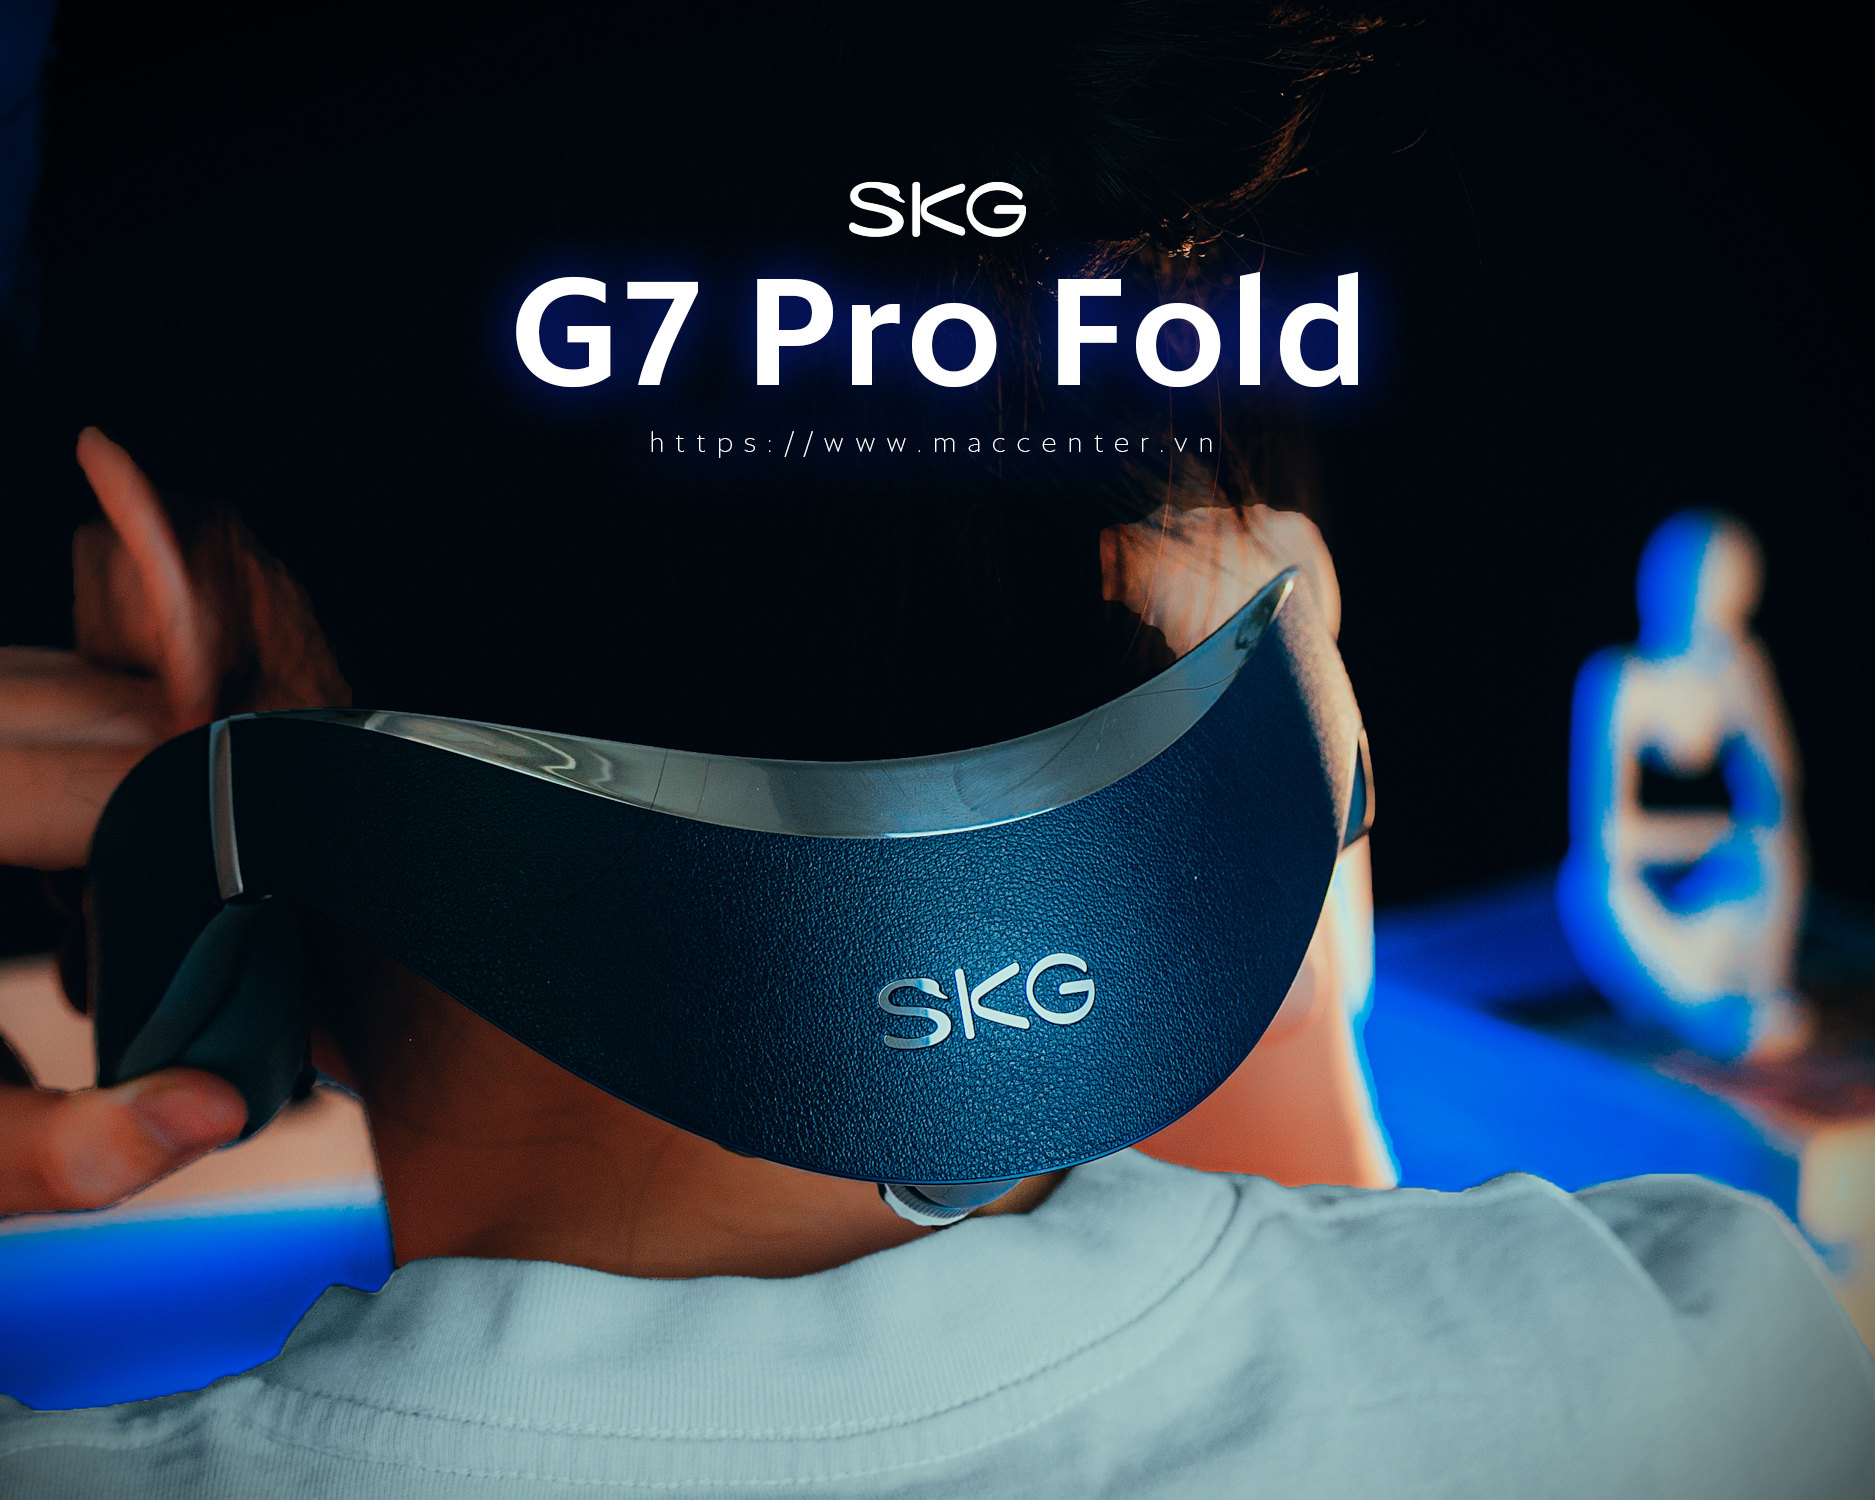 Máy massage cổ SKG G7 Pro Fold